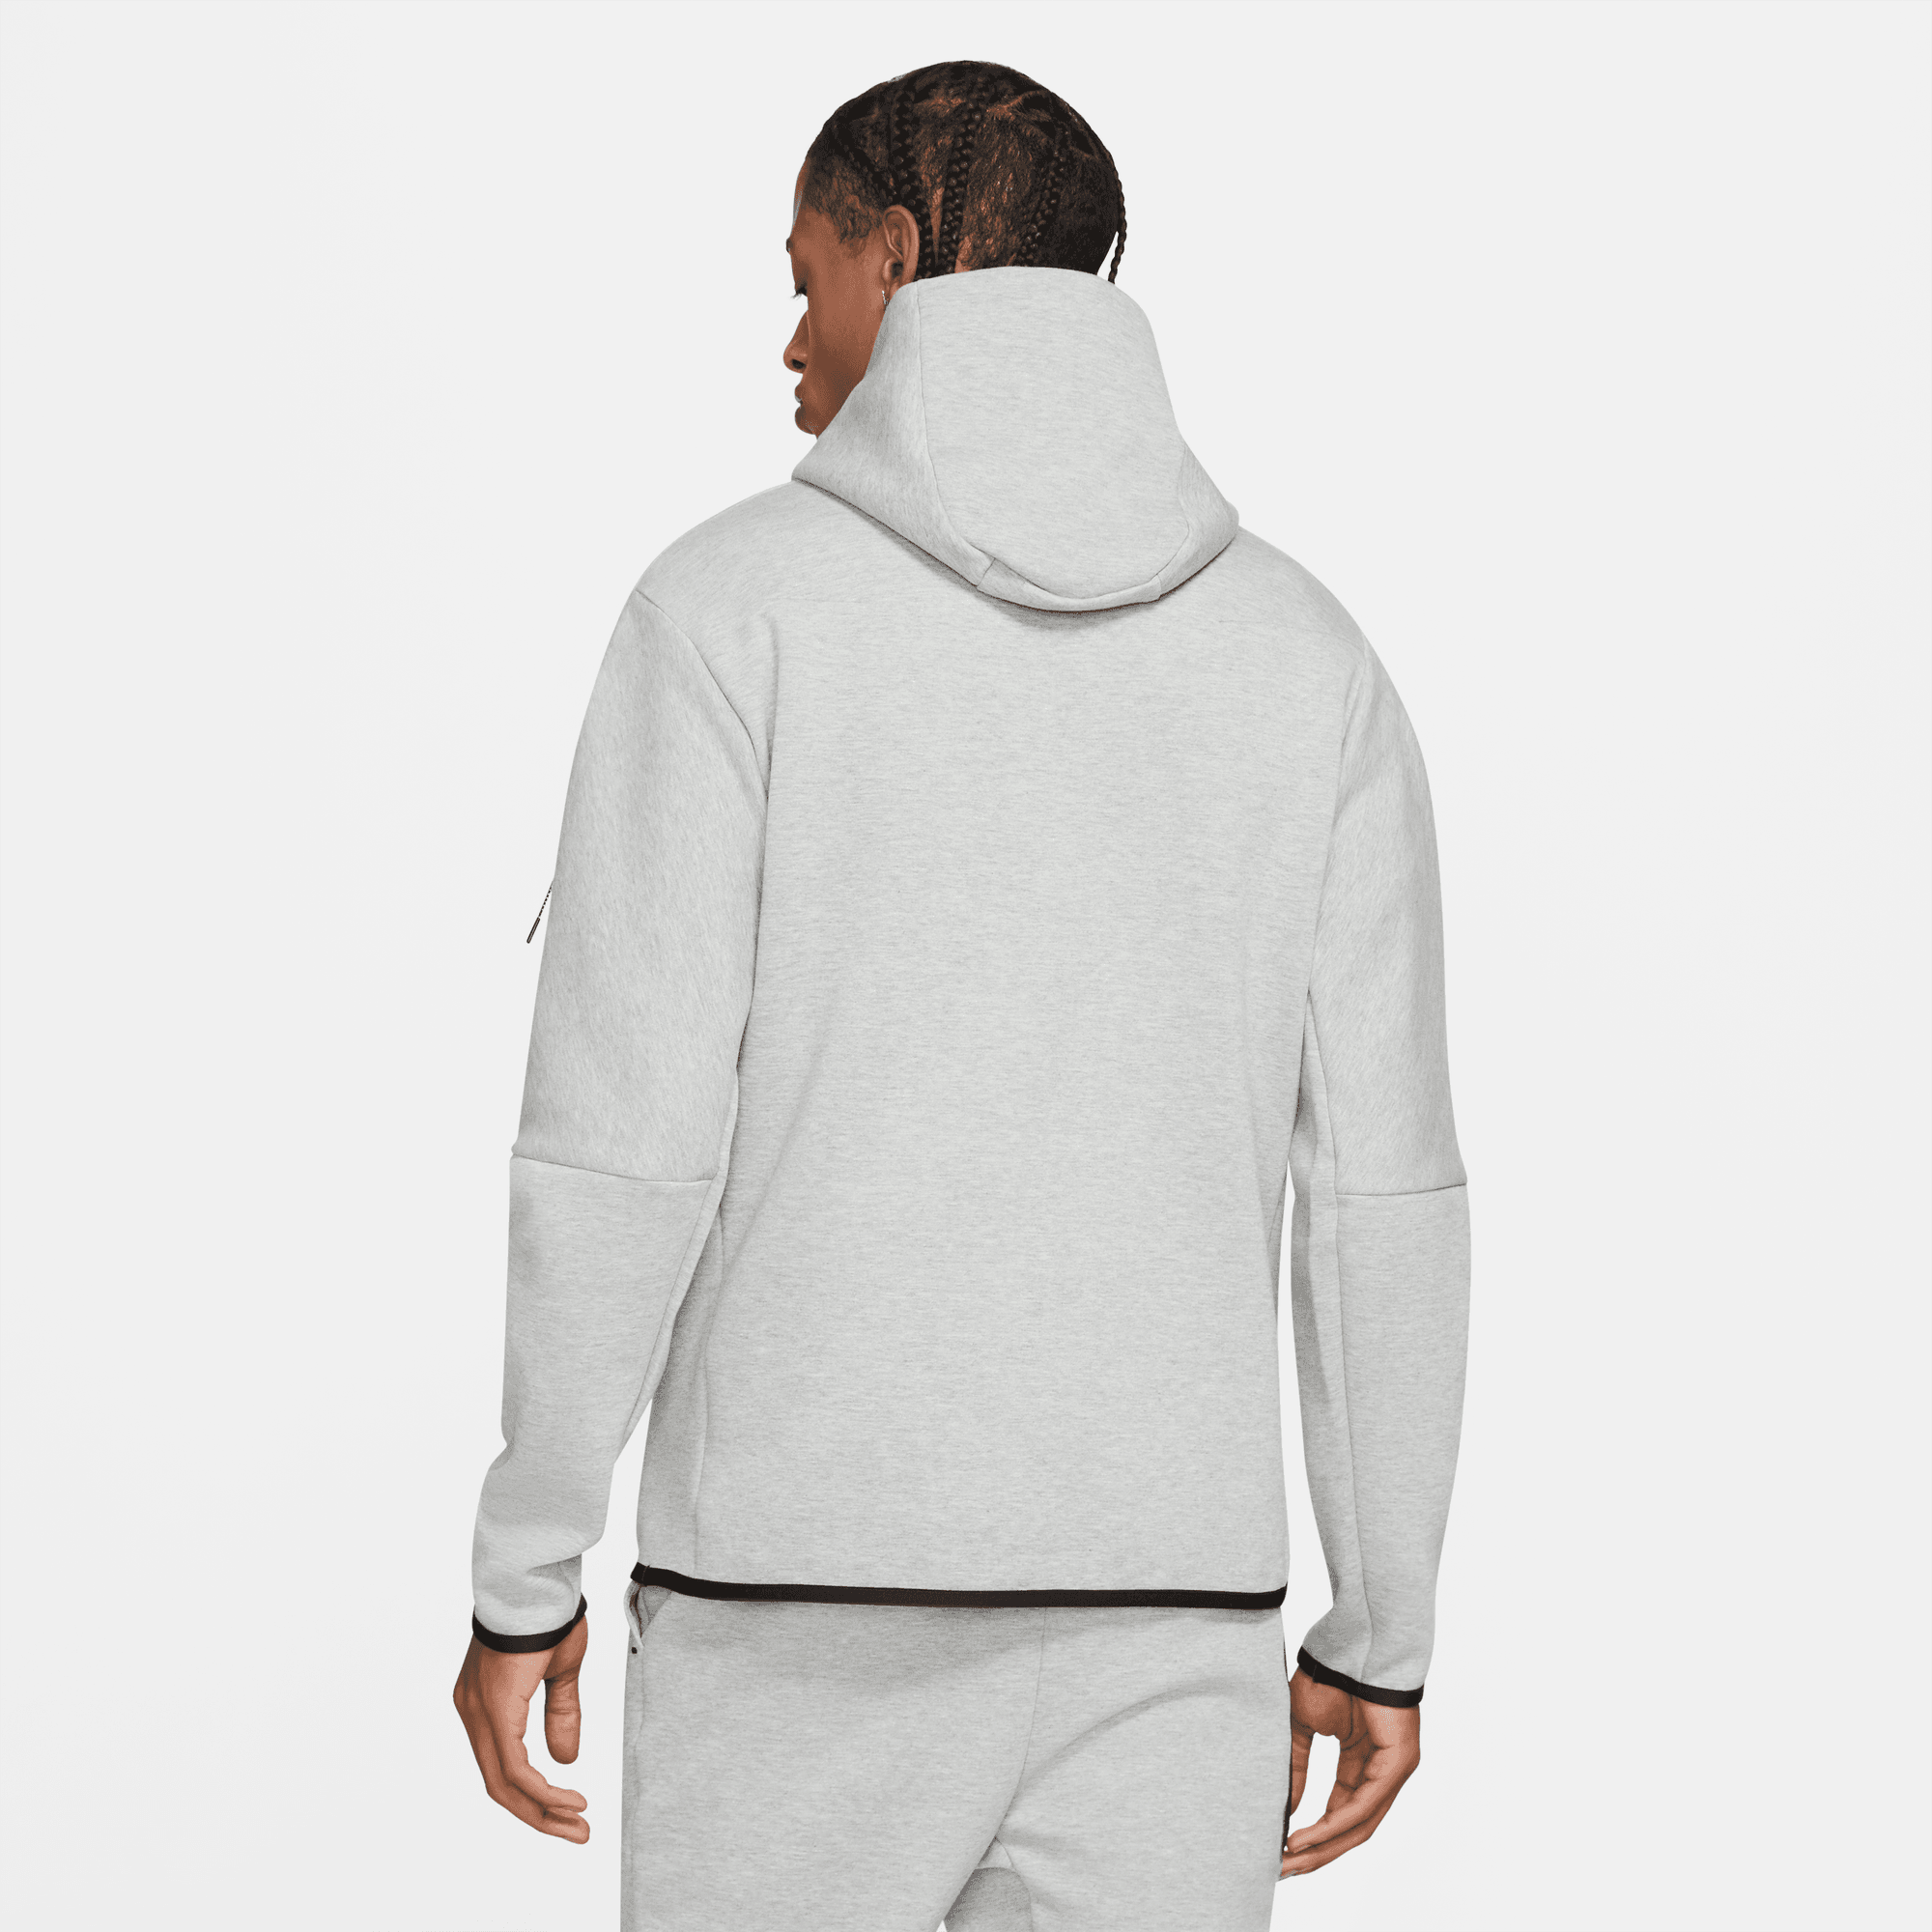 Nike Sportswear Tech Fleece Hoodie Grey